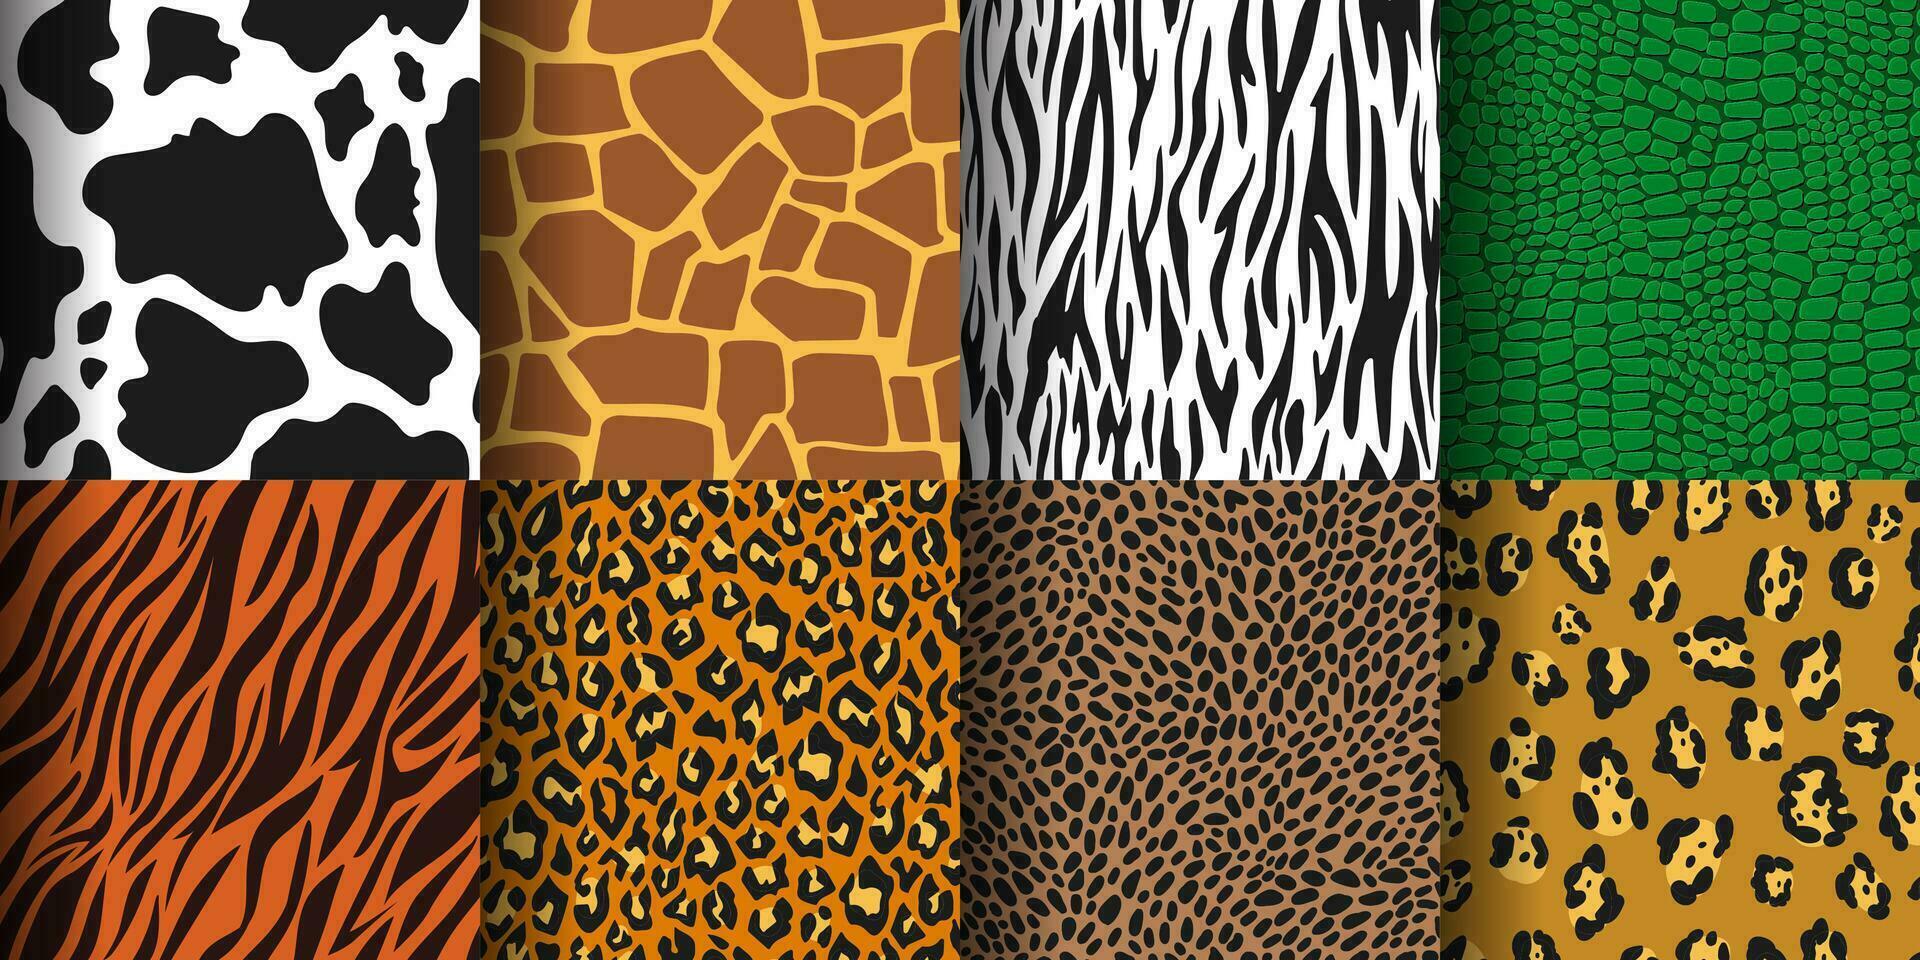 djur- skriva ut sömlös mönster, tiger, leopard hud bakgrund. gepard, zebra, giraff skinn, vild djungel djur grafik textur vektor uppsättning